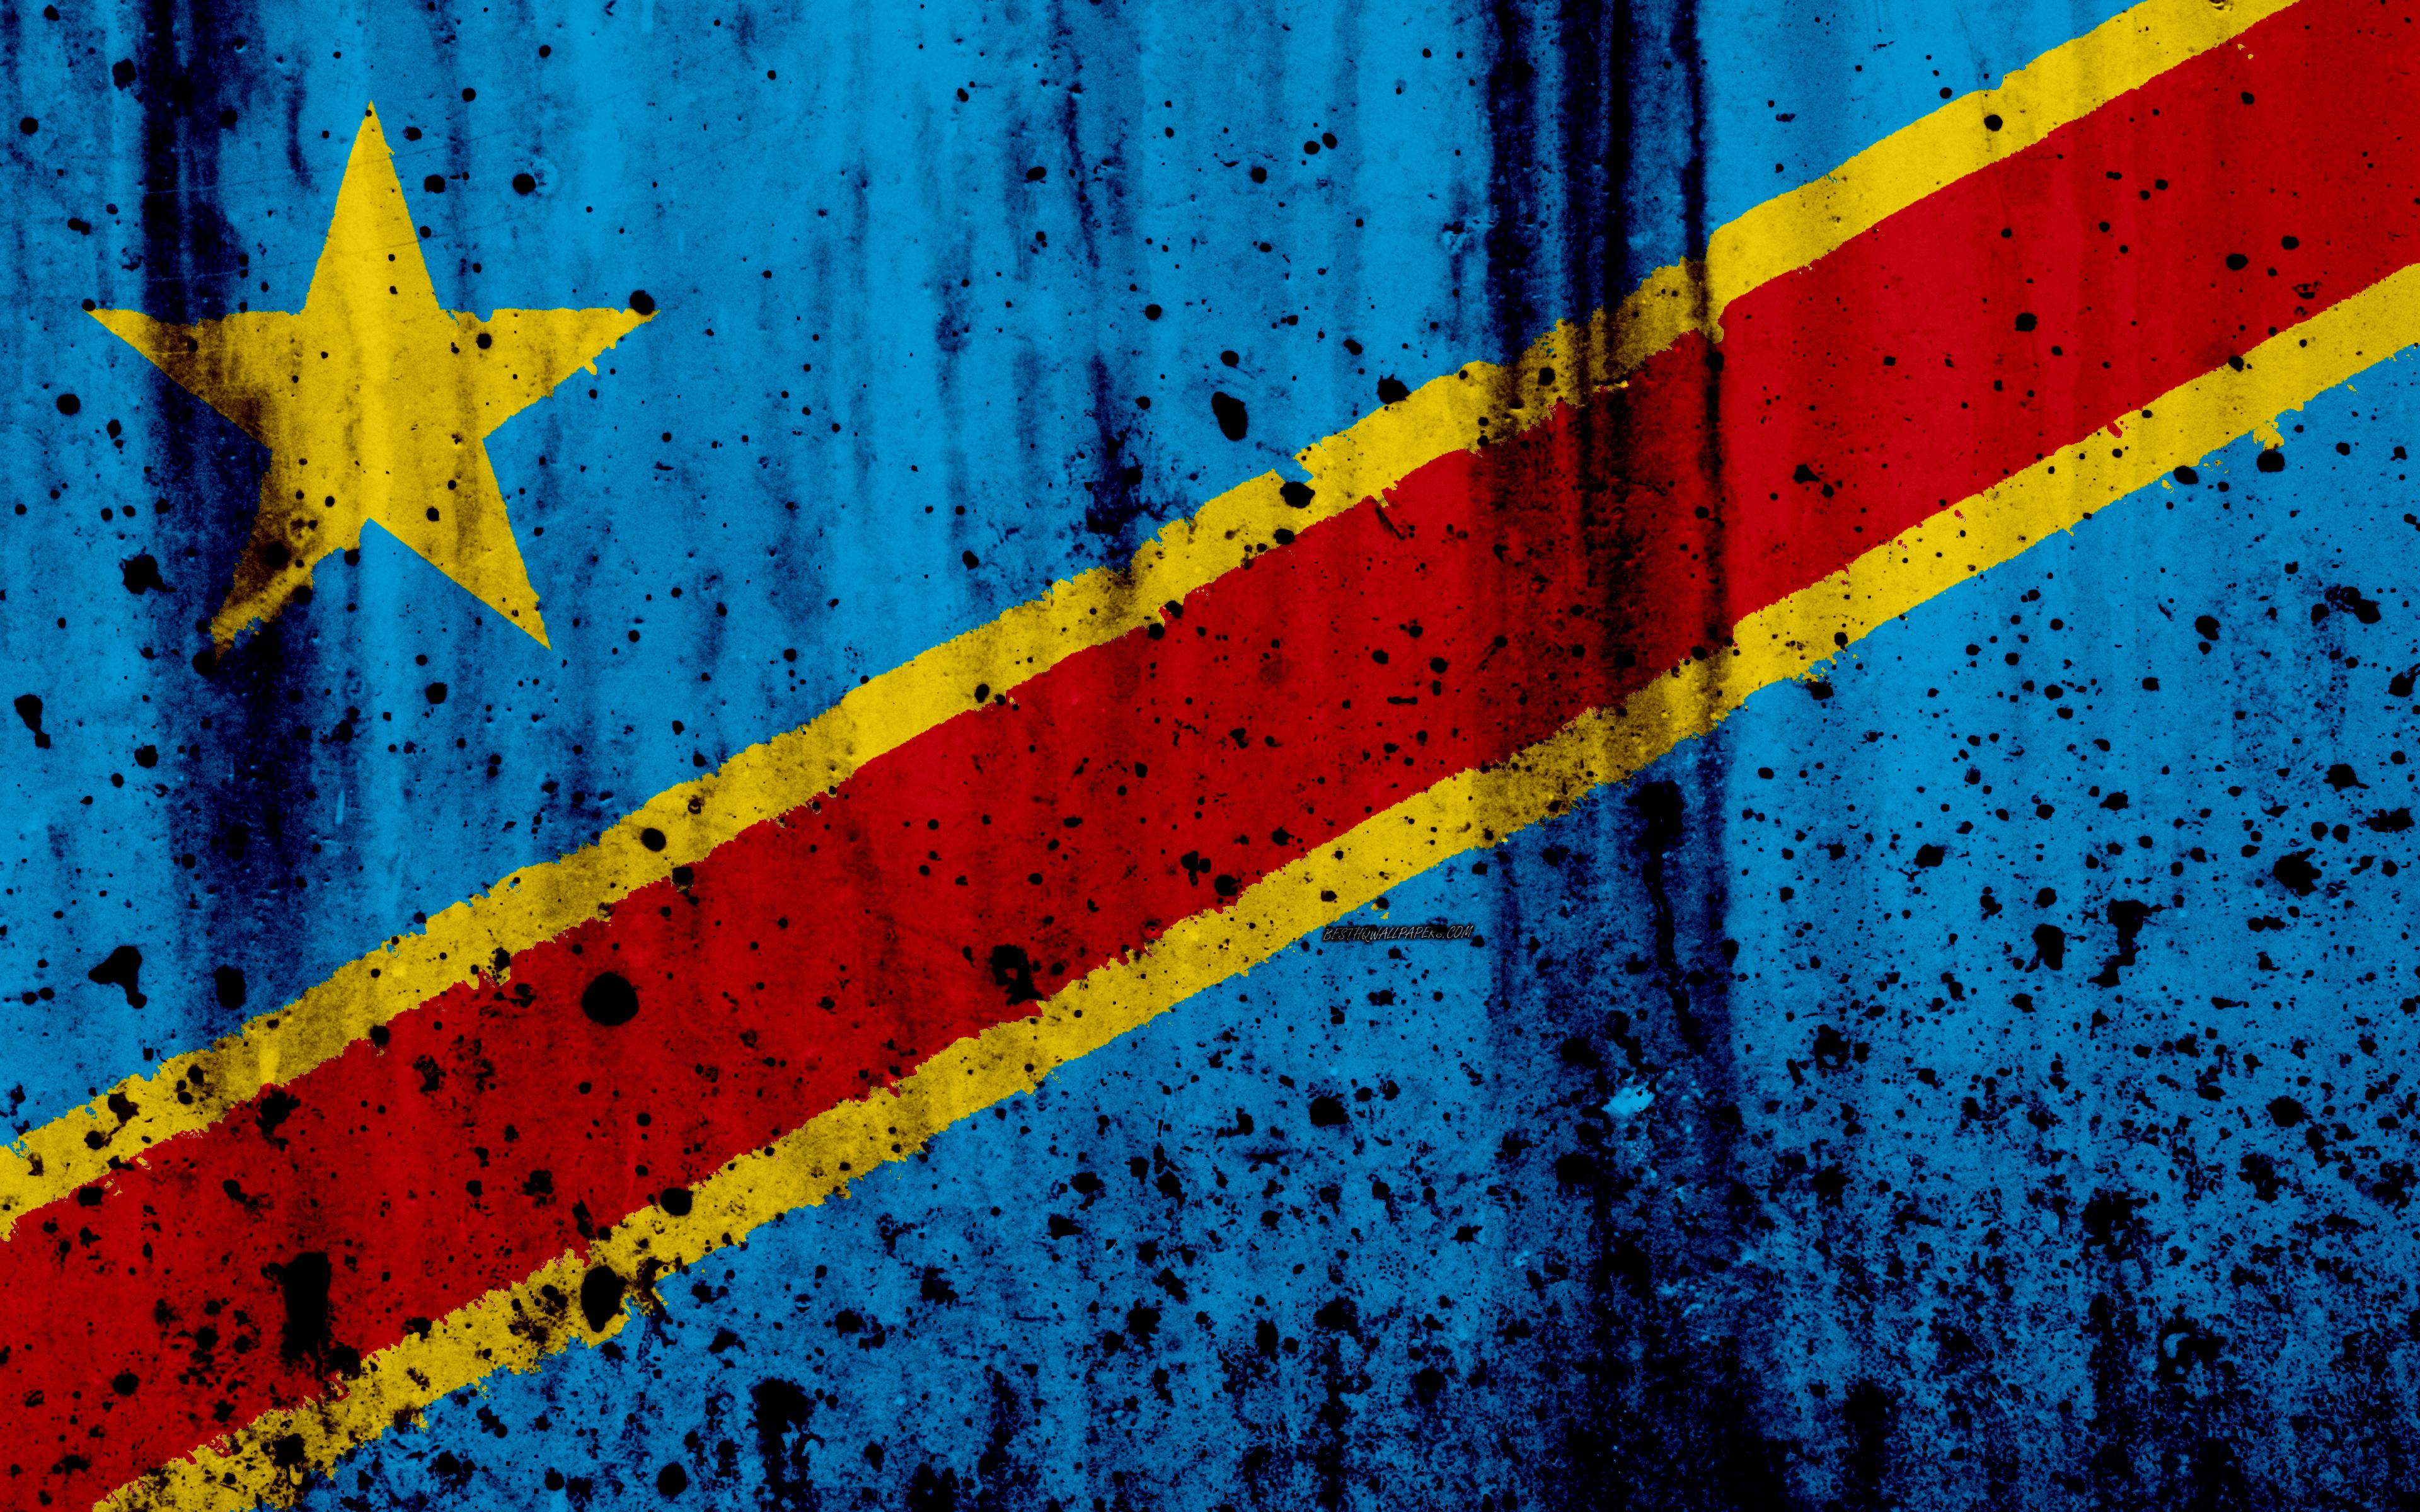 Download wallpaper Democratic Republic of the Congo flag, 4k